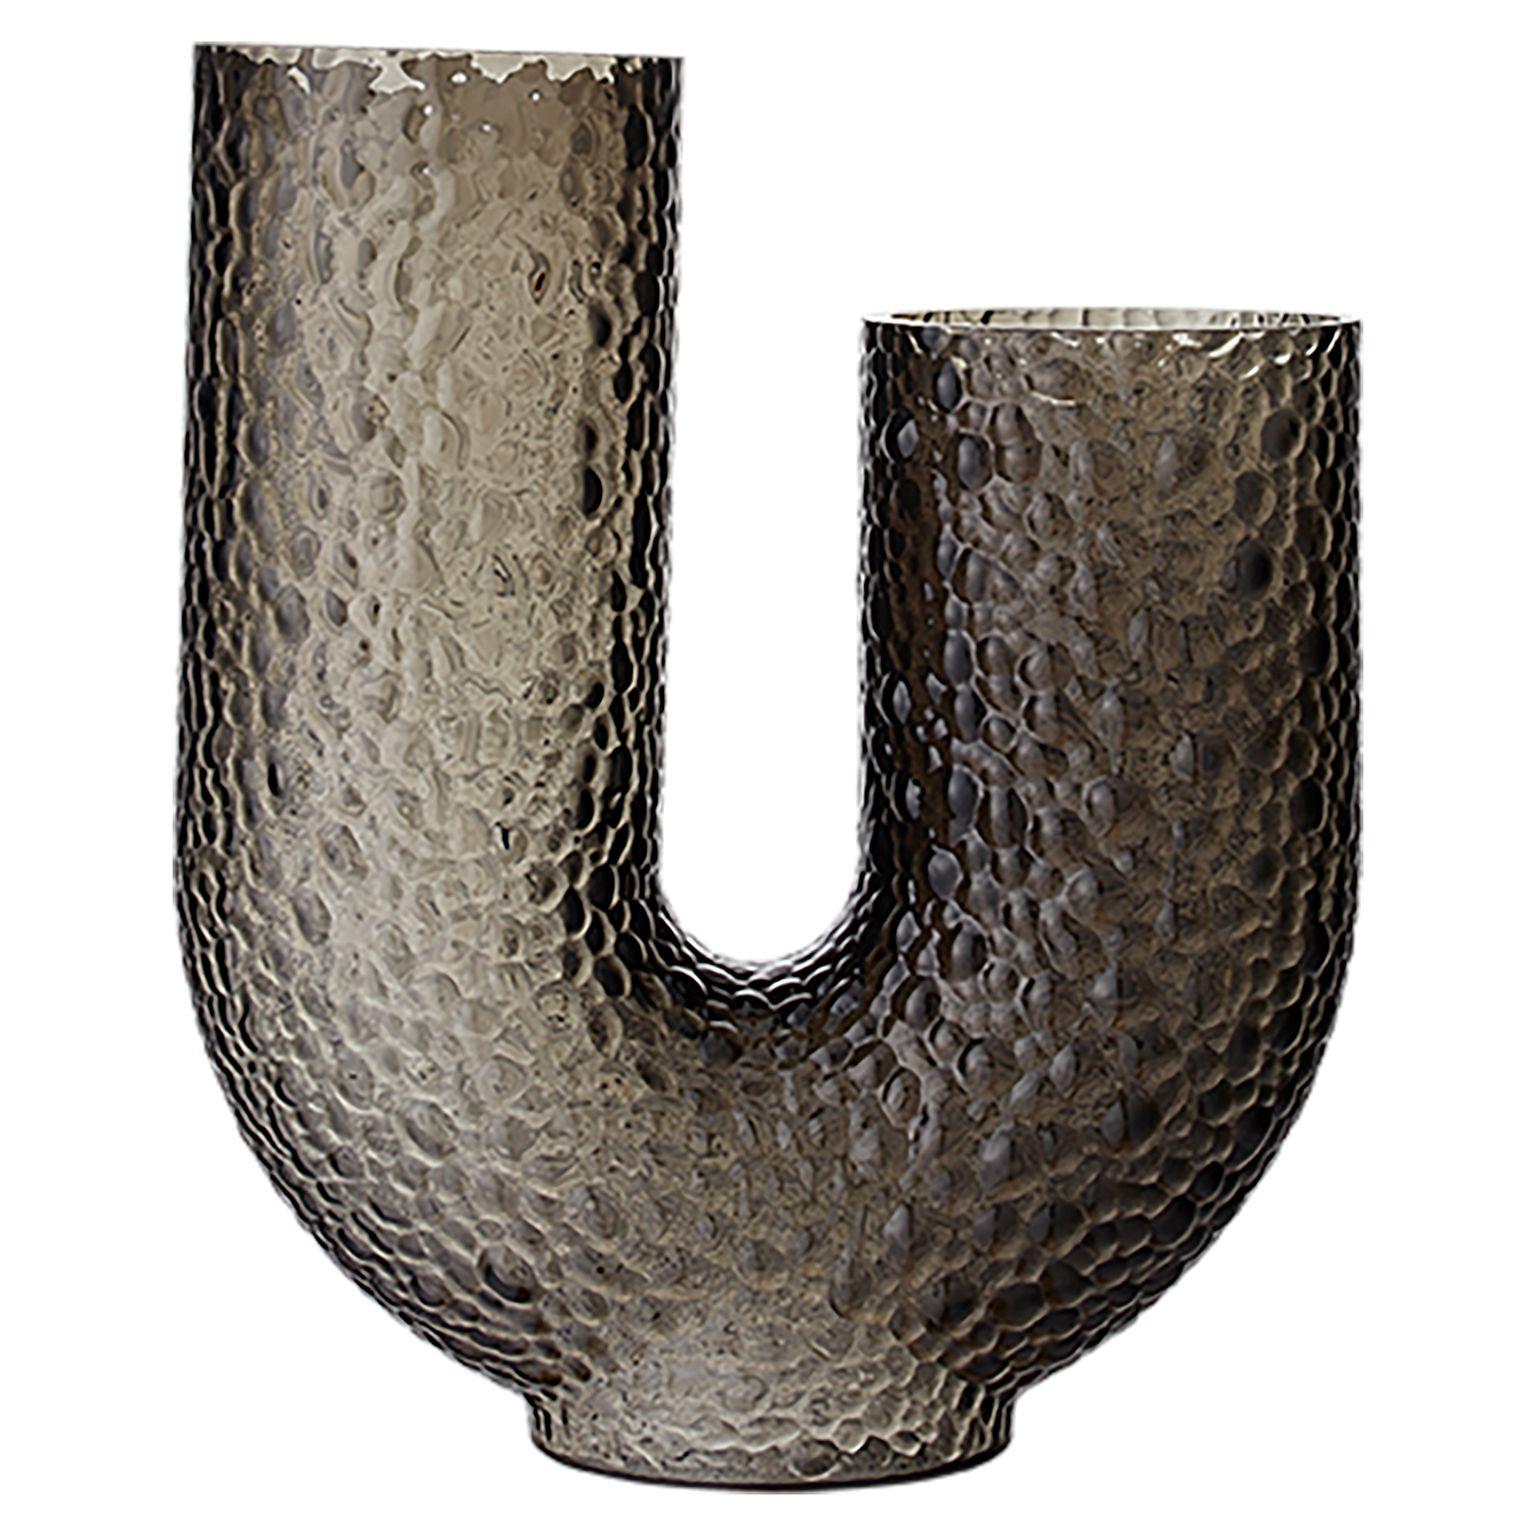 Vase contemporain en verre bas
Dimensions : L 34 x L 14 x H 40 cm
MATERIAL : Verre soufflé 

Ces vases sont fabriqués en verre soufflé à la bouche, ce qui rend chaque vase unique, exclusif et différent des autres. Ils sont un excellent exemple de la